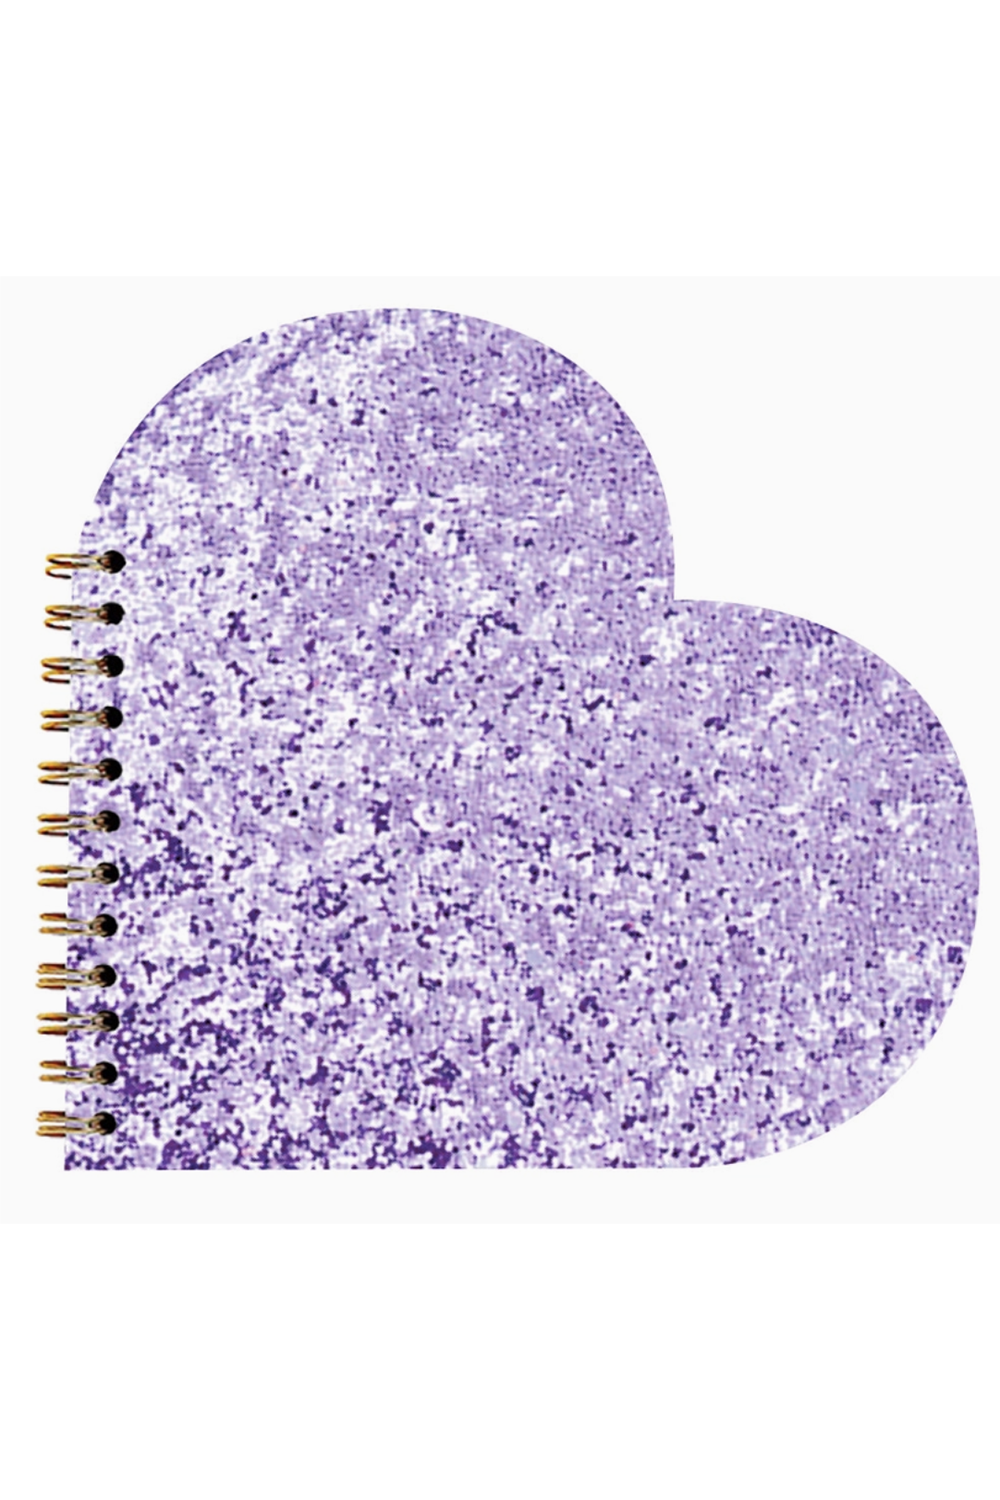 Valentine Notebook - Purple Glitter Heart